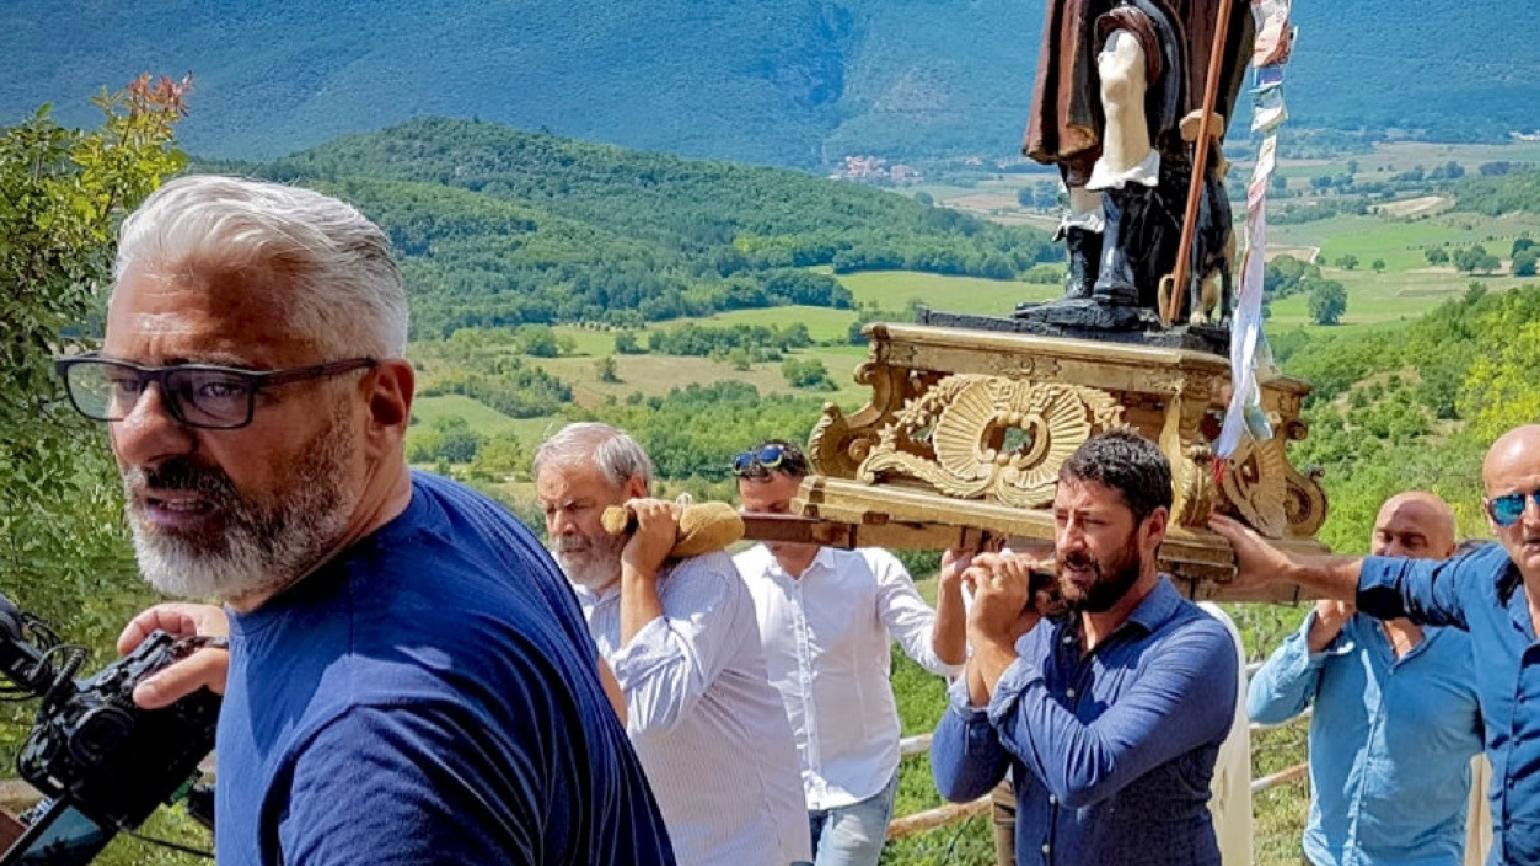 La vita de na vote - Memorie di un Abruzzo montano